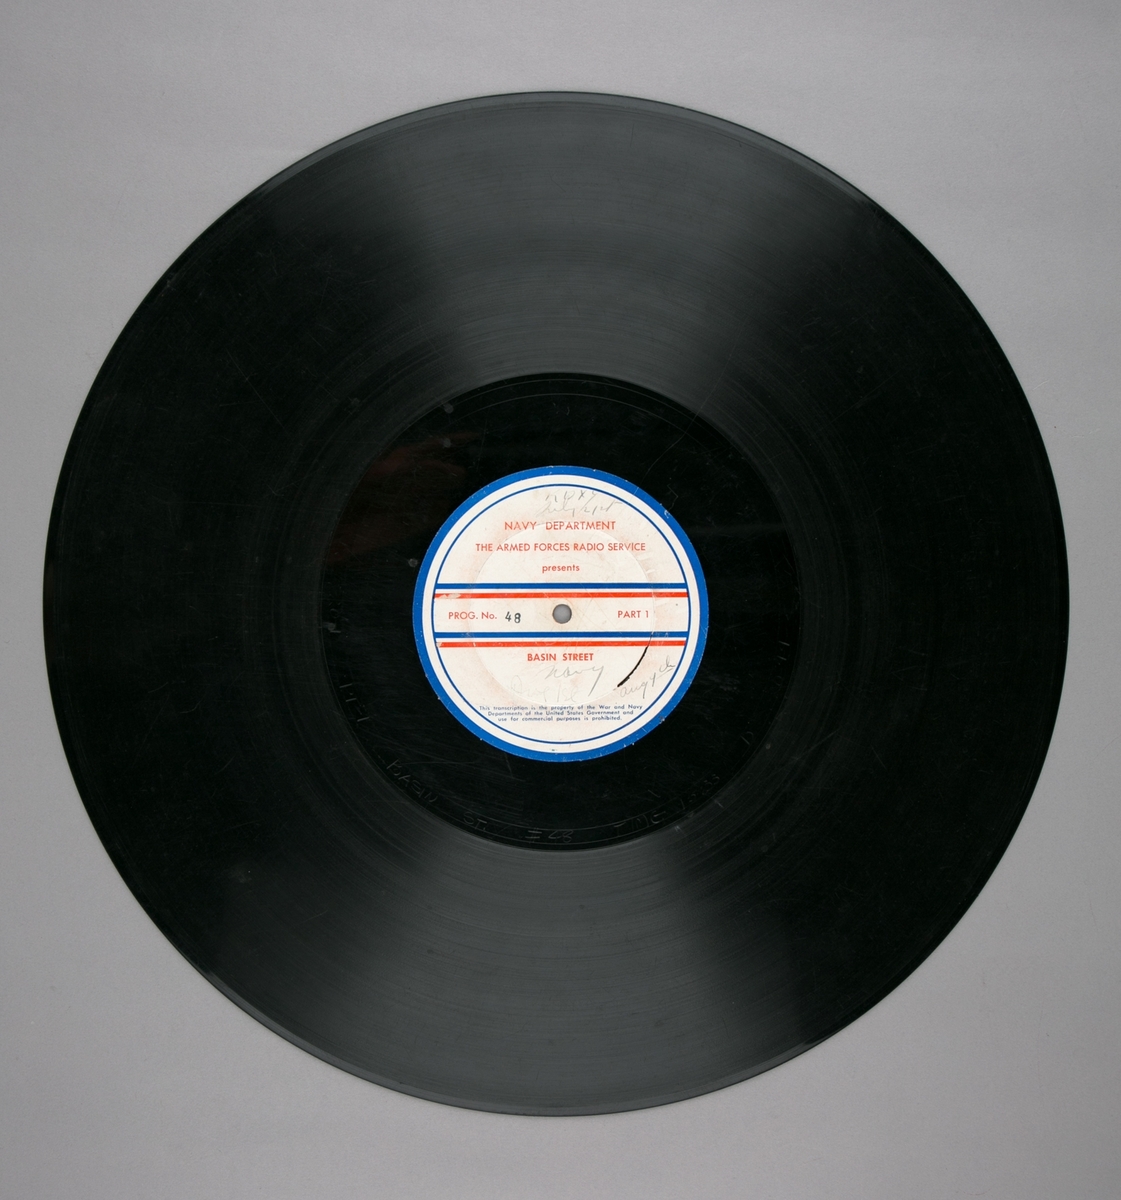 Grammofonplatesamling. LP-plate med tittel "The Armed Forces Radio Service" utgitt av Navy Department. Plate i svart vinyl spilles på platespiller med 33 1/3 omdreininger i minuttet (33-plate).